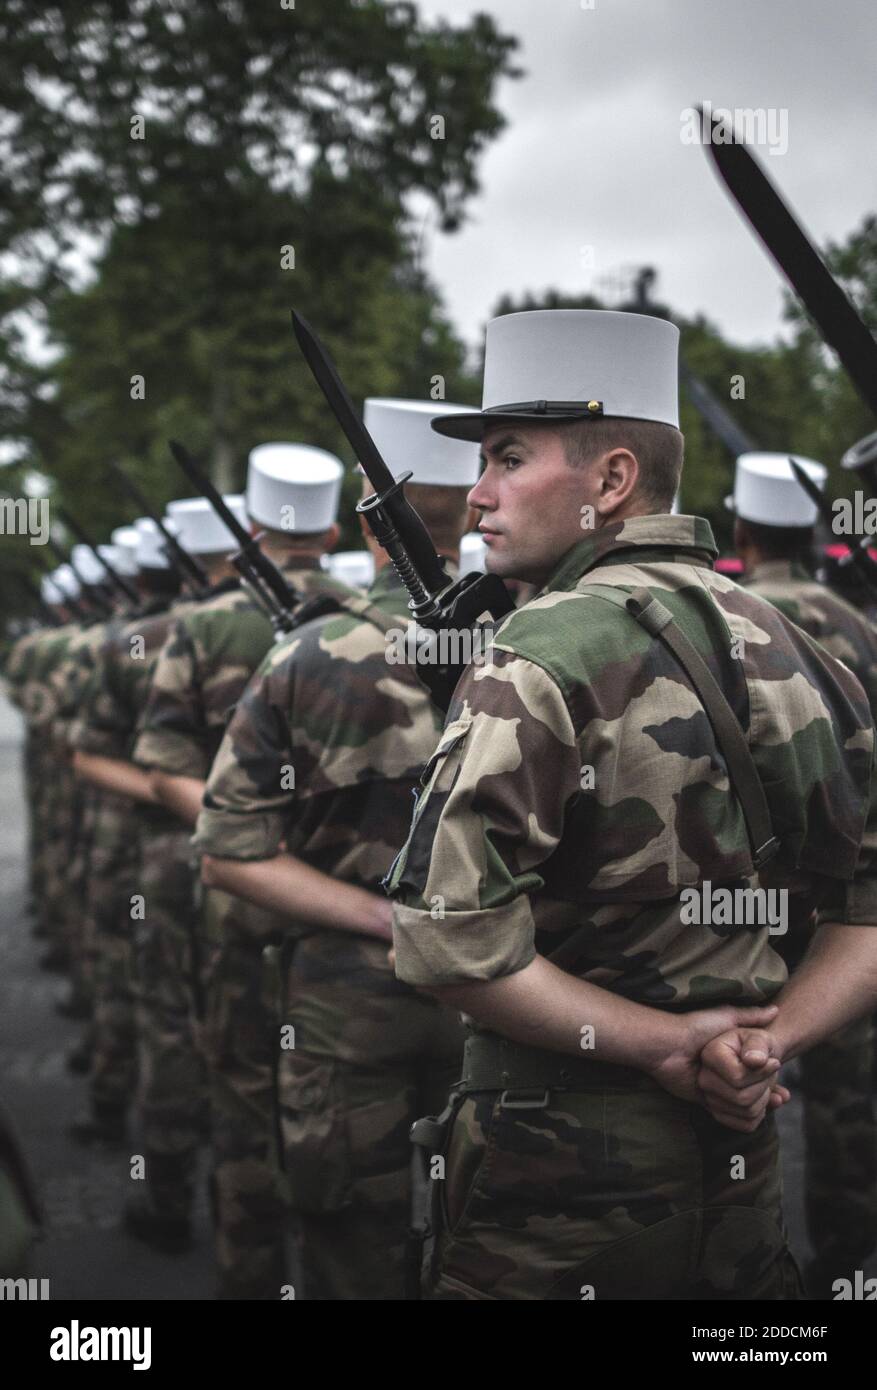 French Foreign Legion Abzeichen,Uniform,Armee Caporal 5 Jahre Fremdenlegion